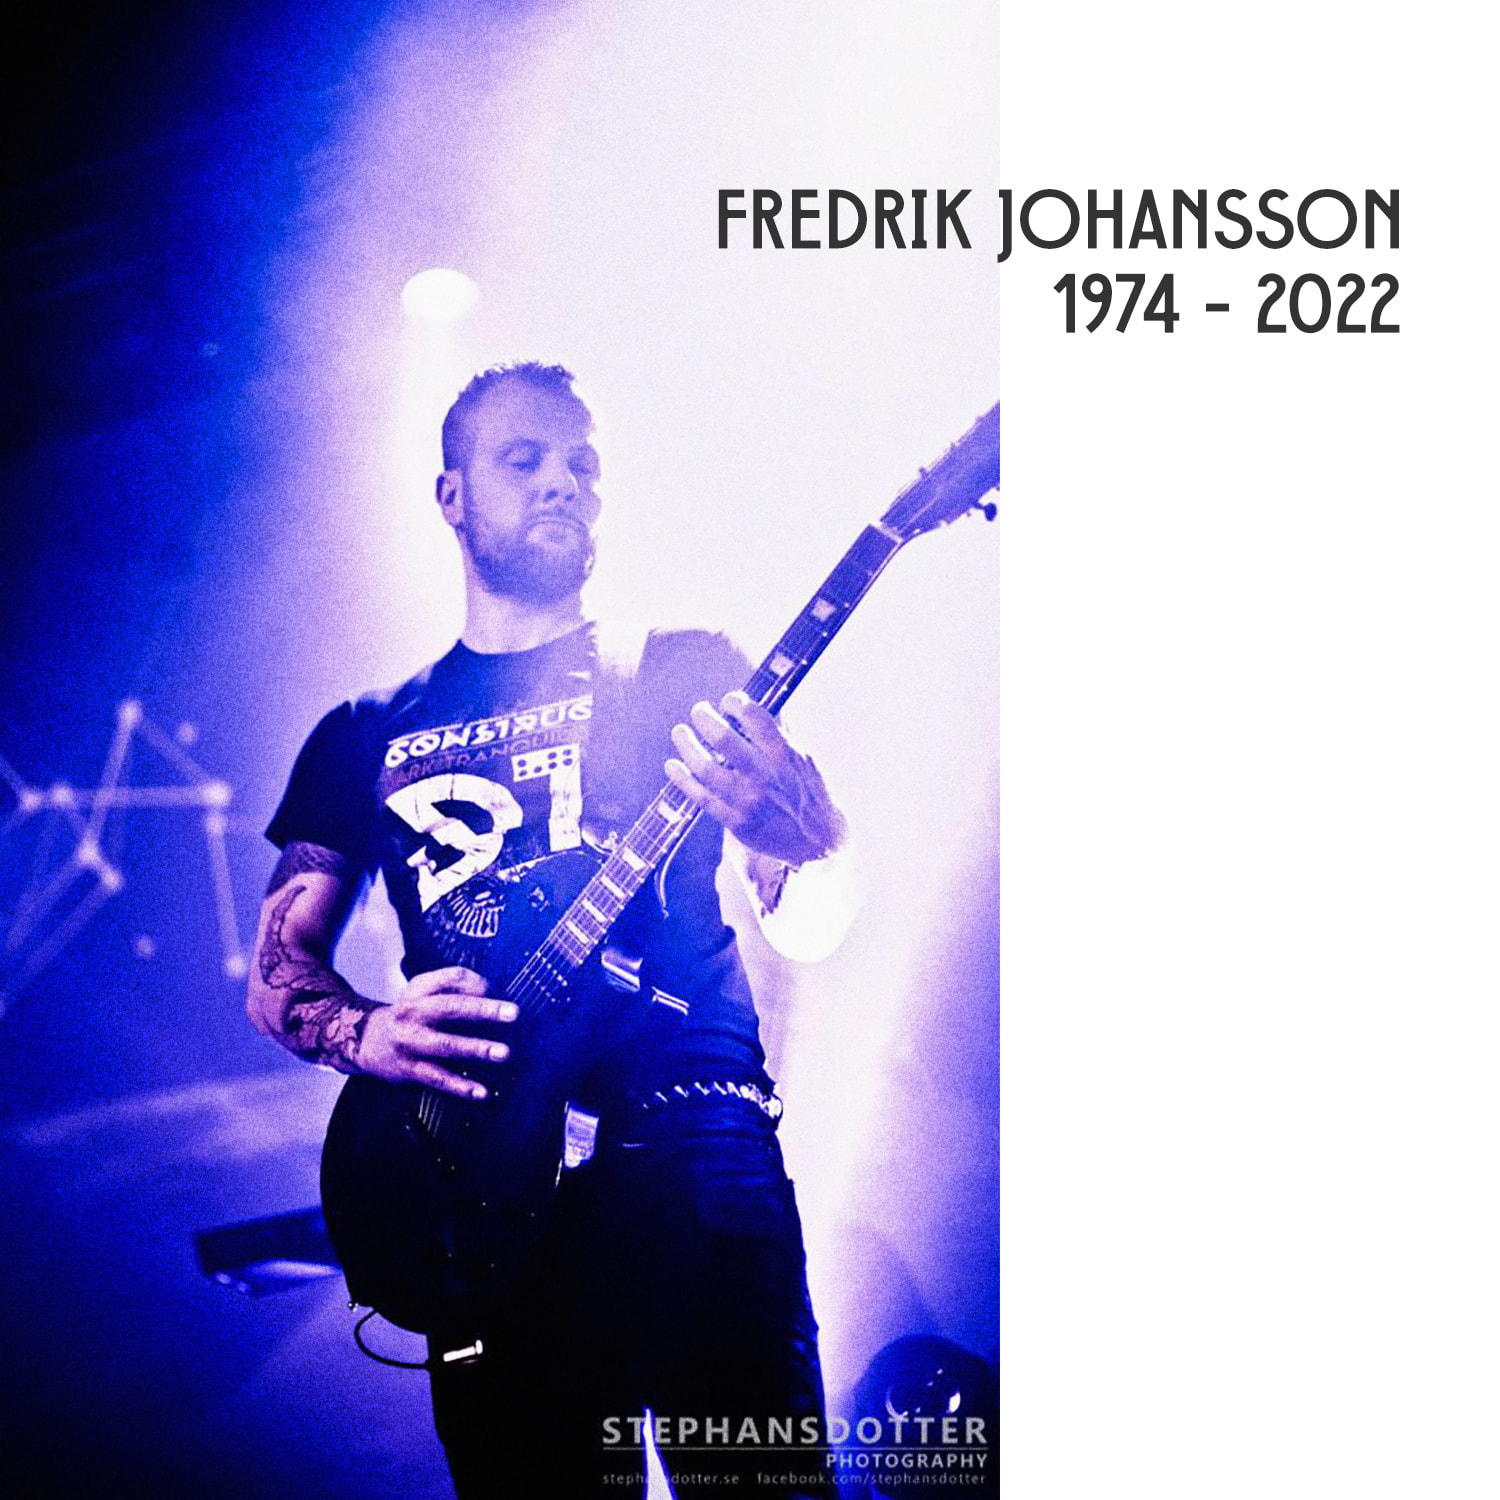 Fredrik Johansson pic 1